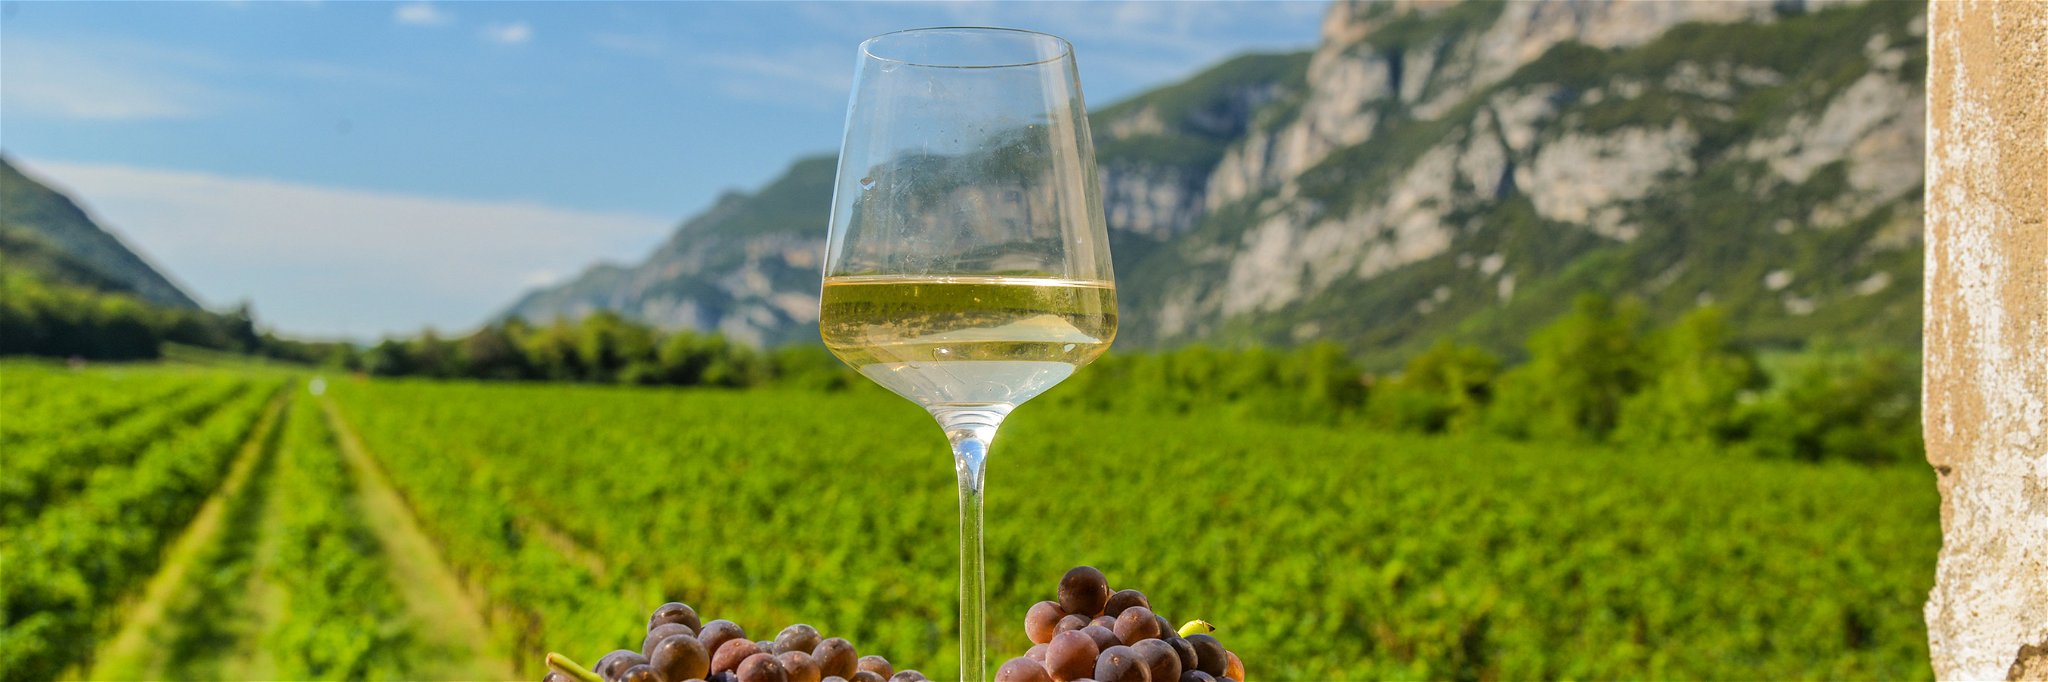 Ideale Bedingungen für den Anbau von Pinot Grigio.